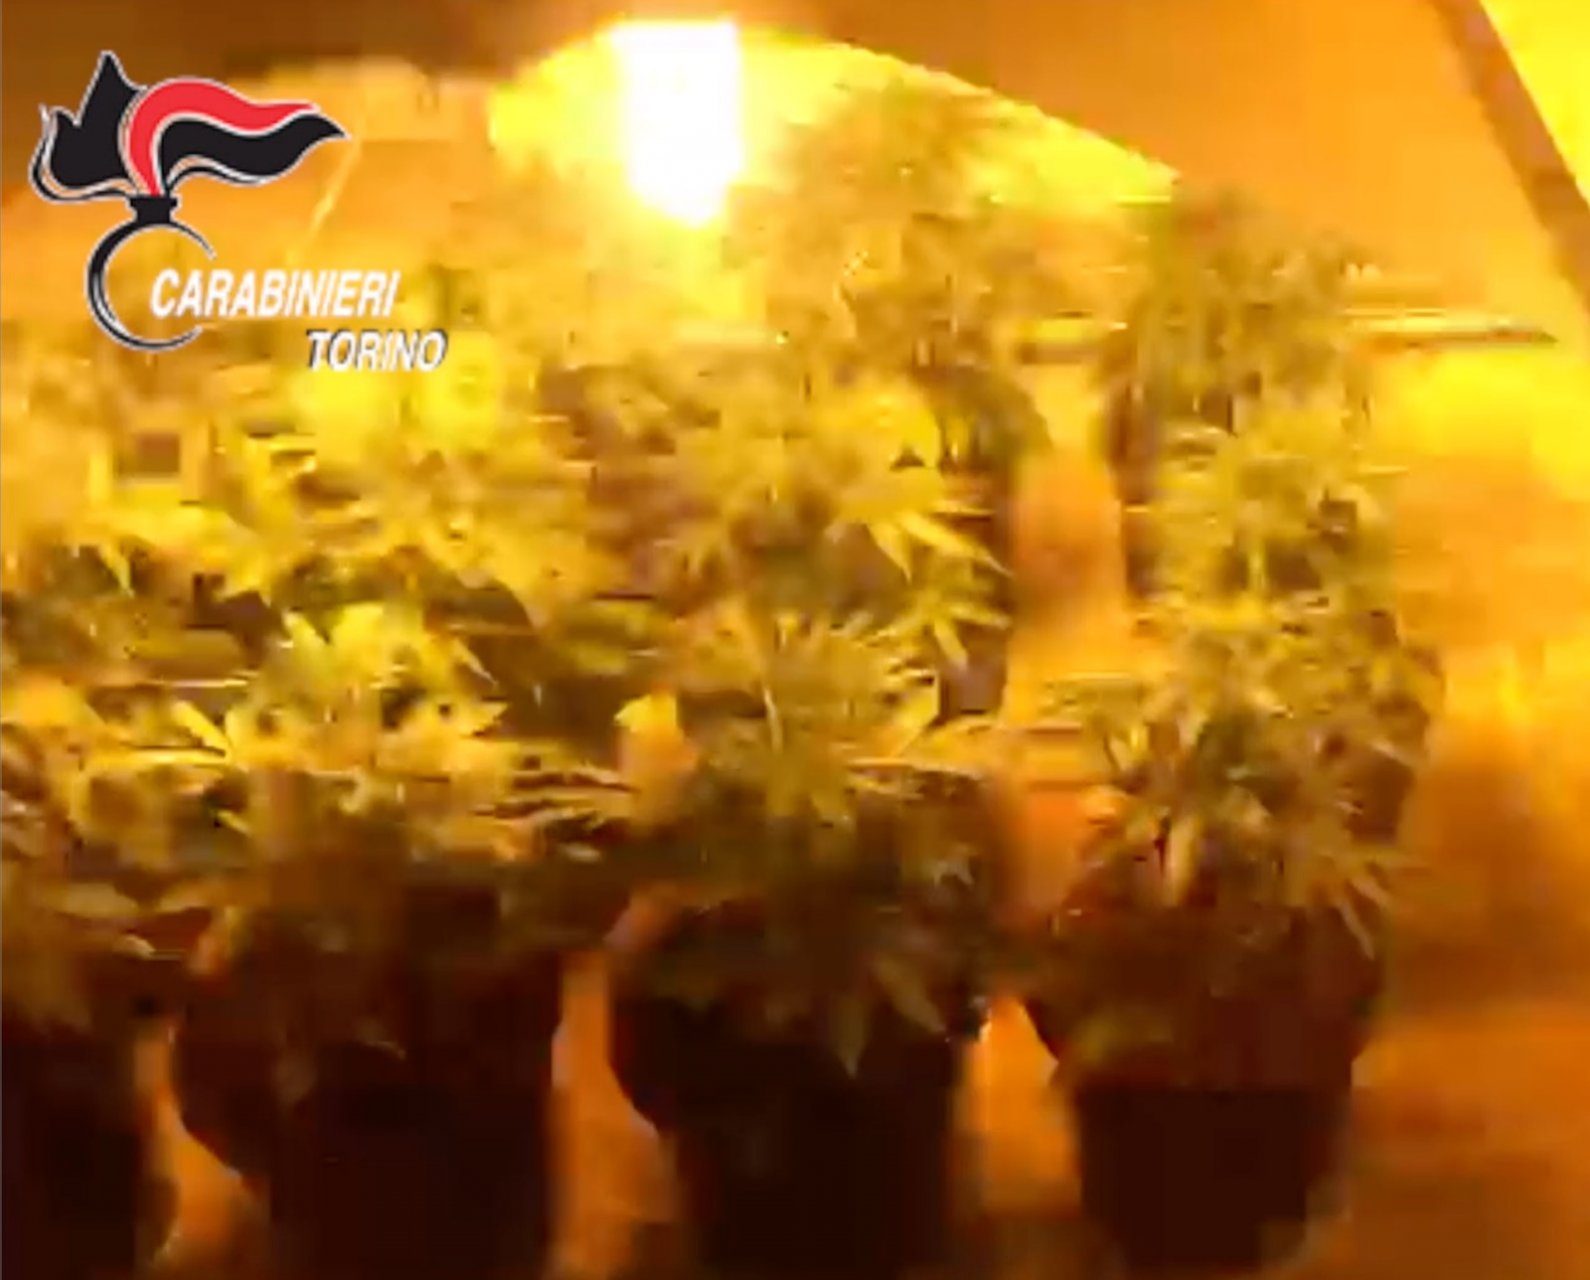 La marijuana nascosta tra i barattoli di spezie. Un uomo è stato arrestato per detenzione e produzione di droga dai carabinieri della stazione di Castiglione.